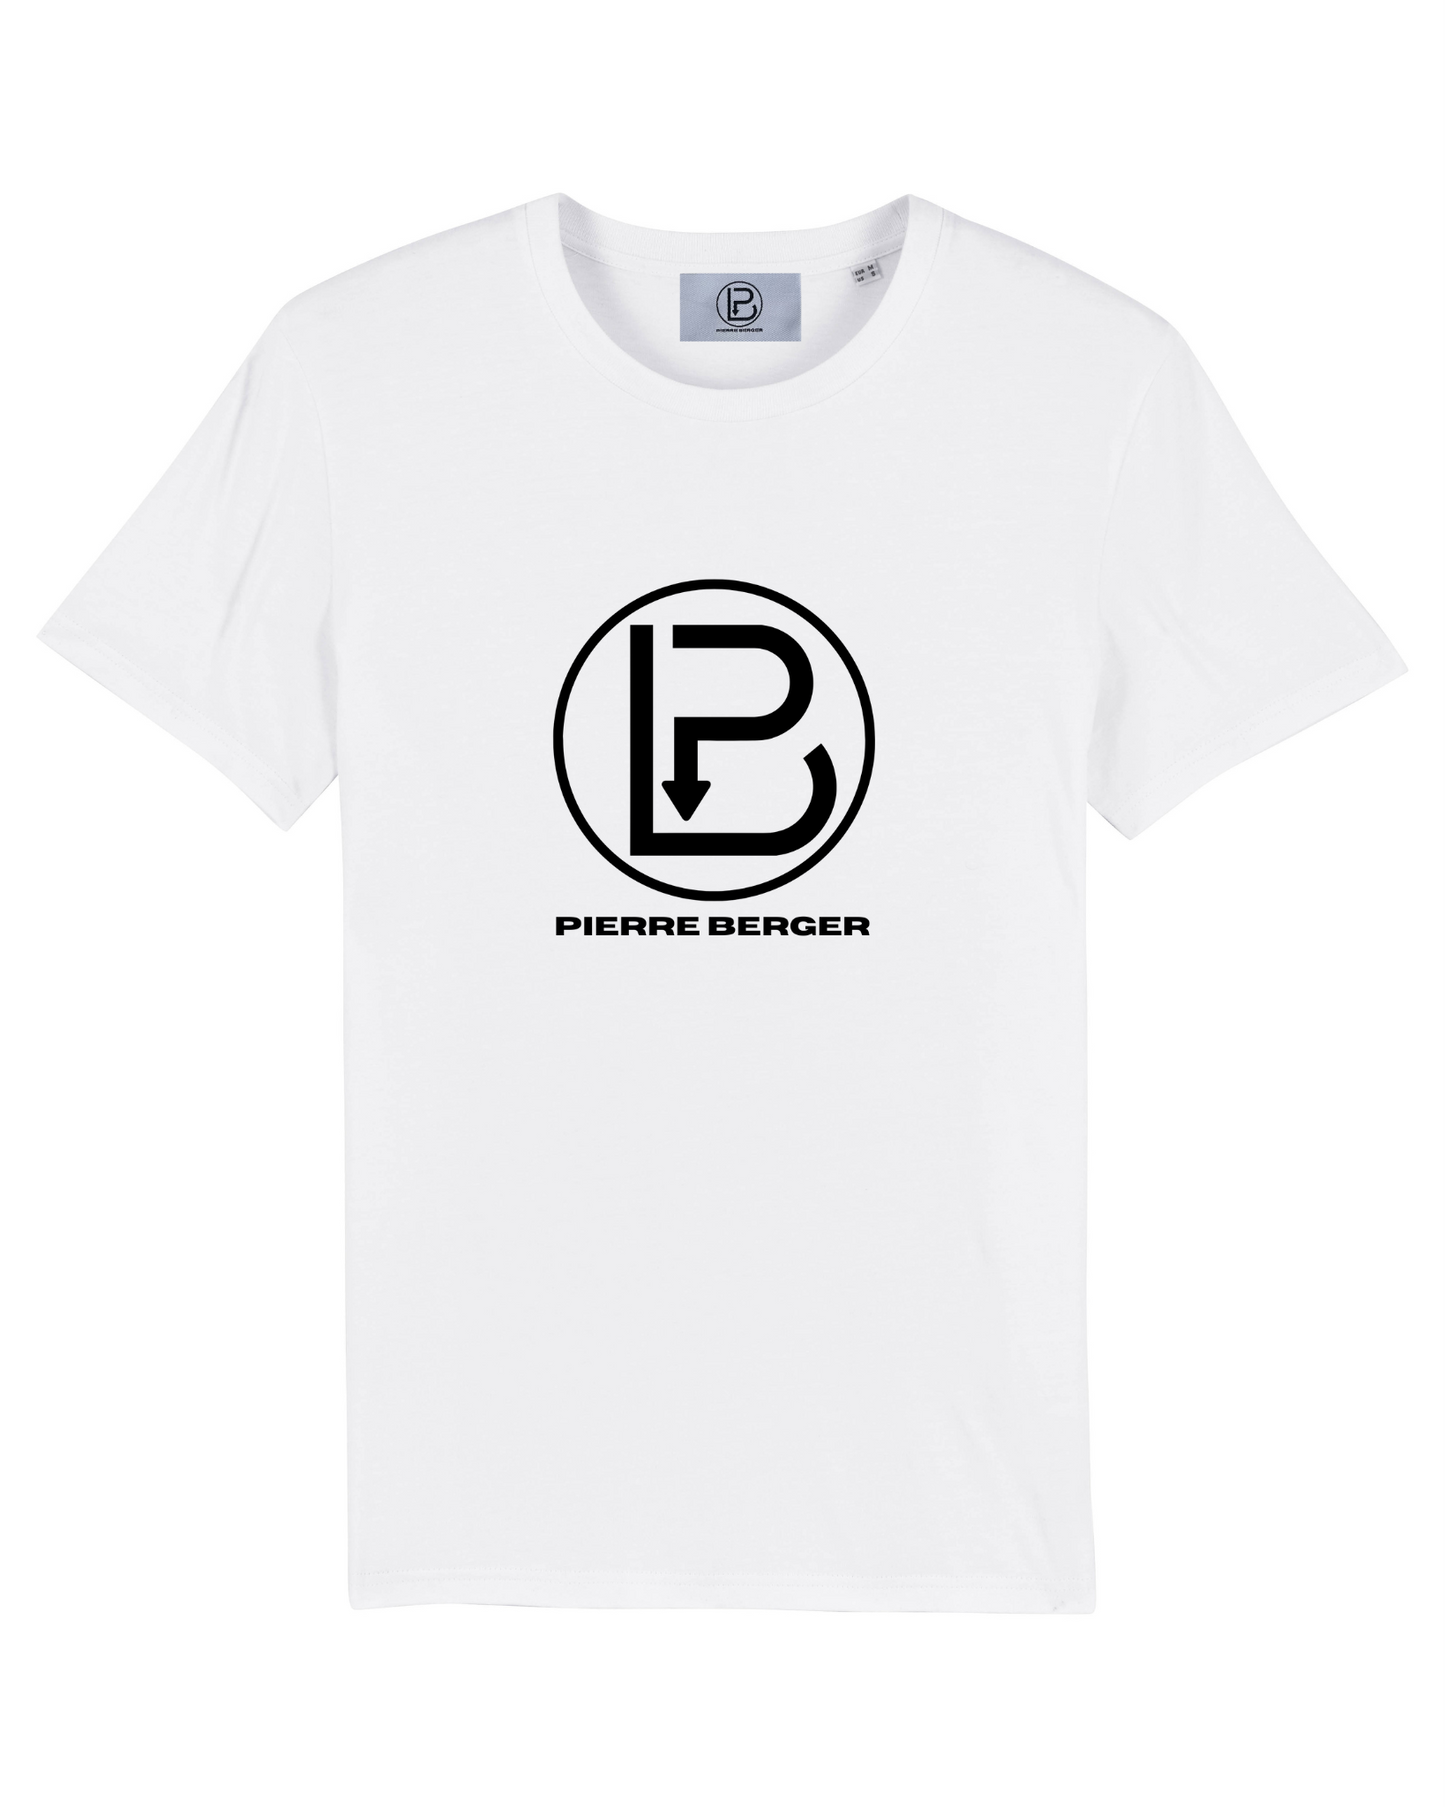 PIERRE BERGER- 100% Bio-Baumwolle Unisex T-Shirt